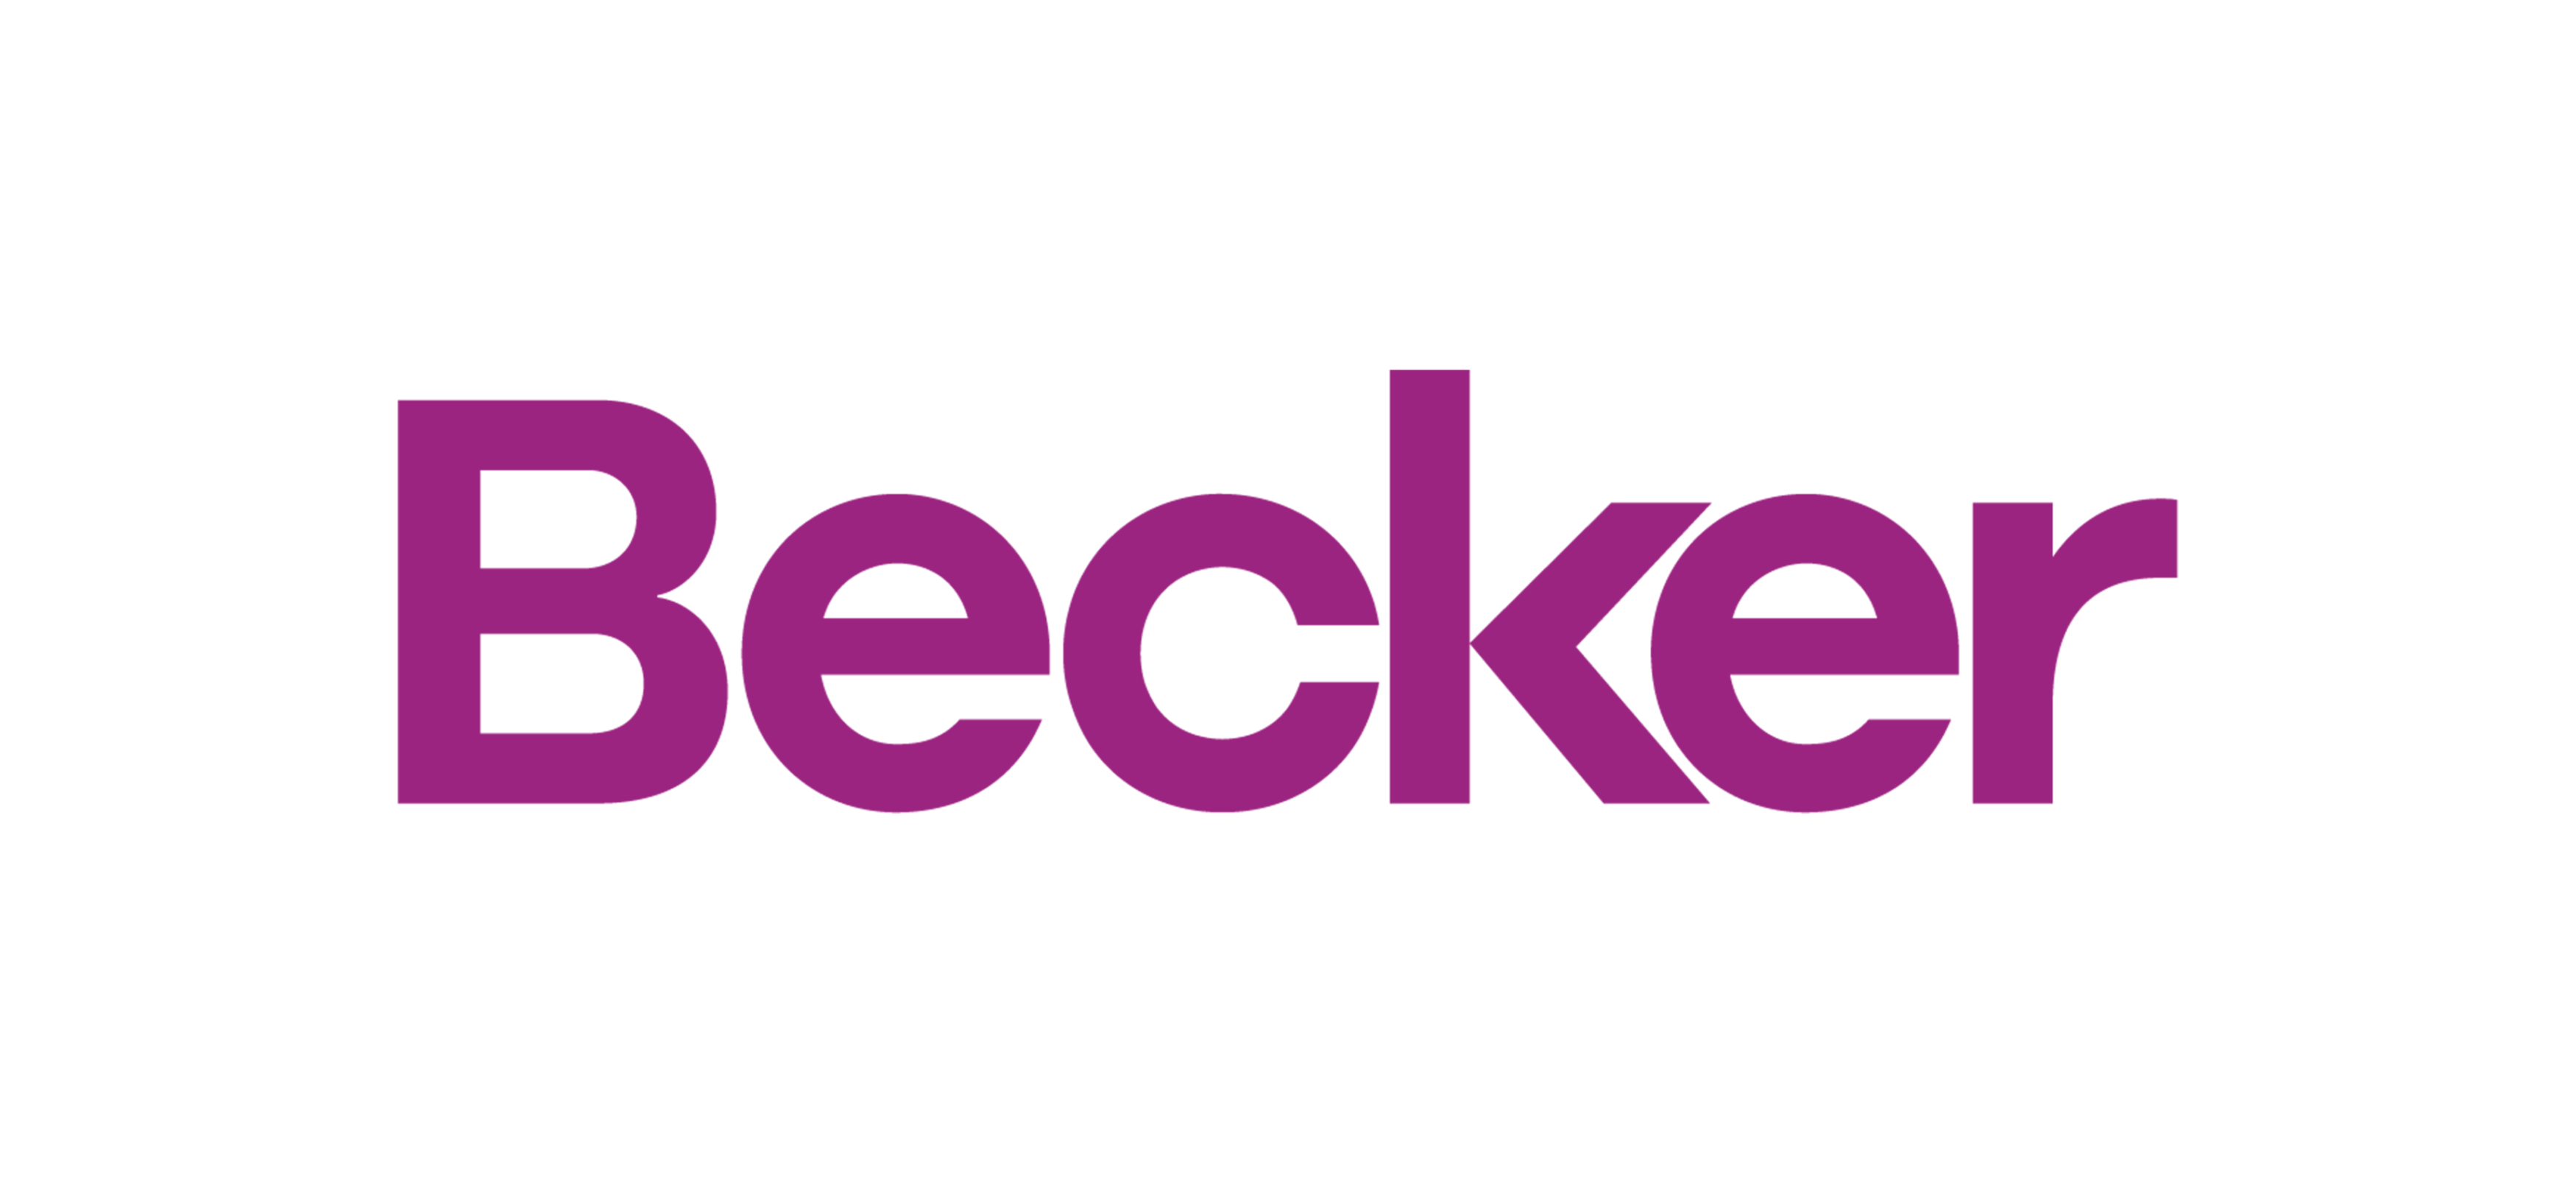 Becker-logo-rgb-Lg-1-3500x1634.png